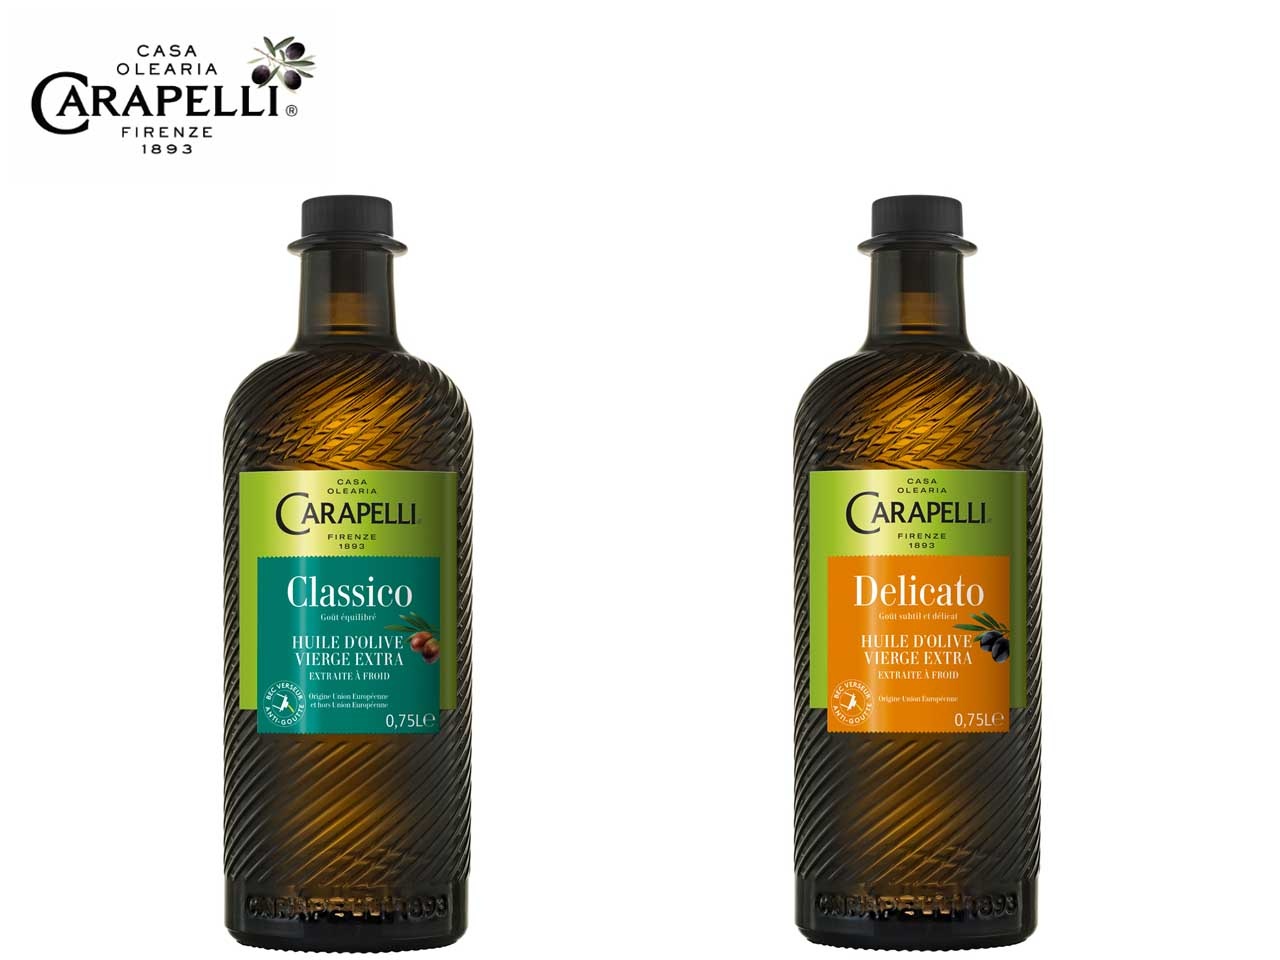 La gamme d’huiles d’olive Vierge Extra non Bio Carapelli, reconnue Saveurs de l’Année 2021